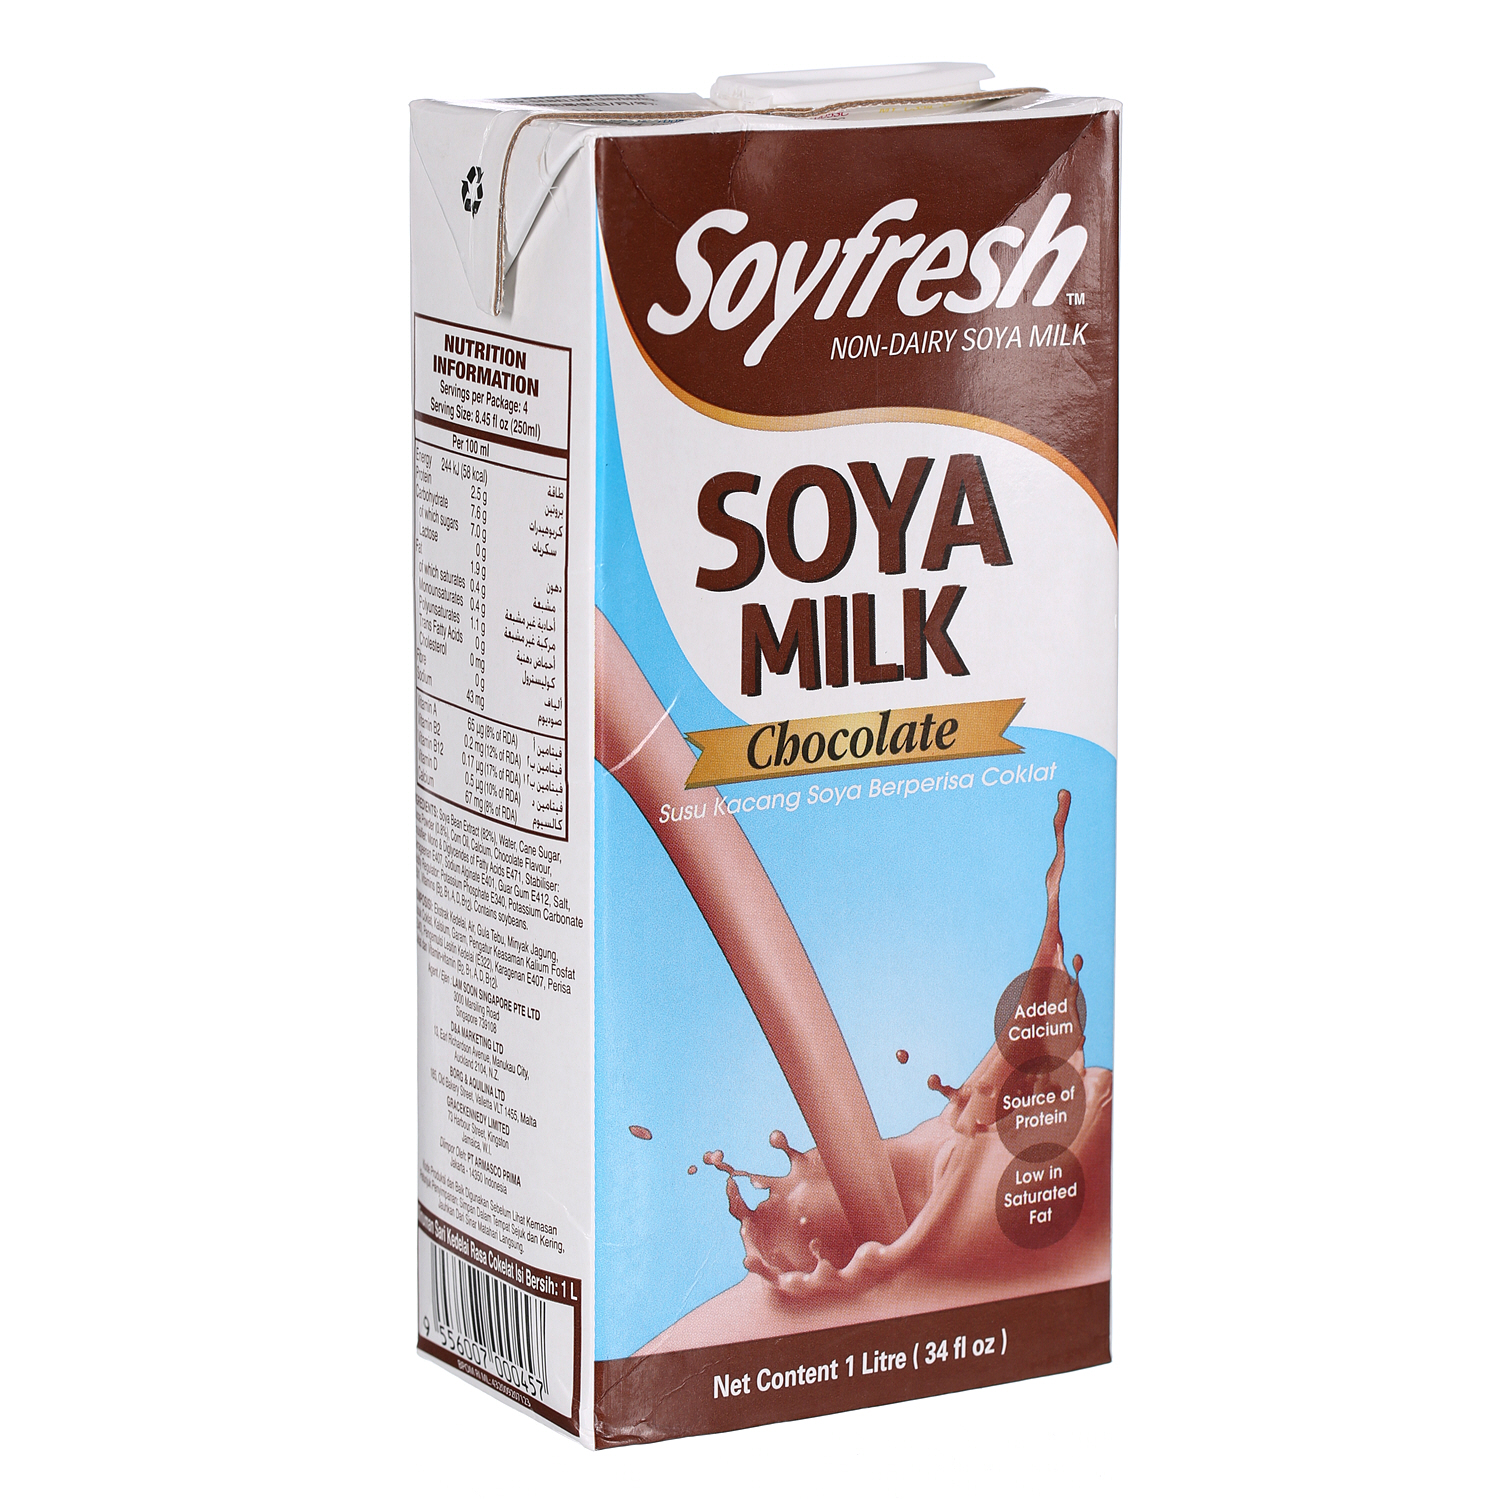 Soyfresh Soya Milk Chocolate 1Ltr